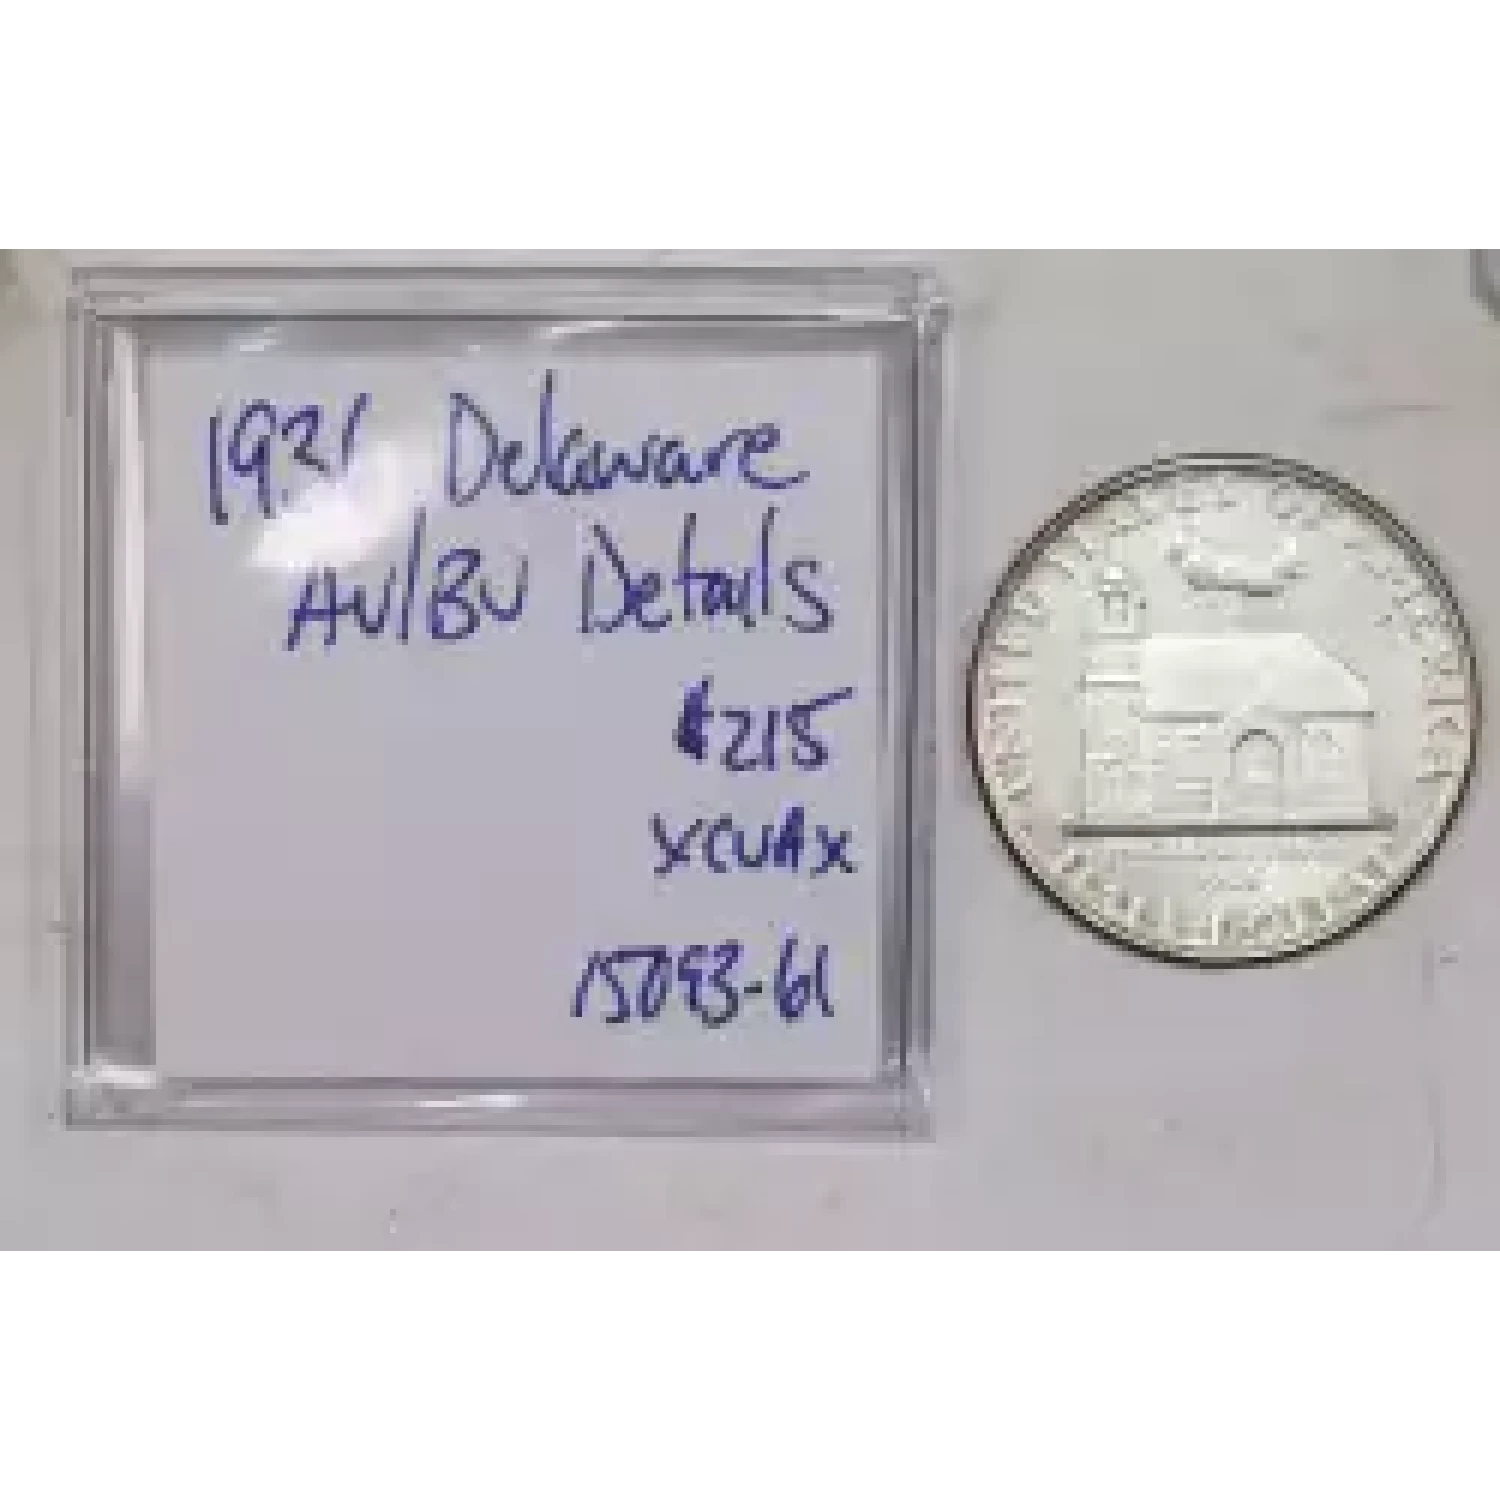 Classic Commemorative Silver--- Delaware Tercentenary 1936 -Silver- 0.5 Dollar